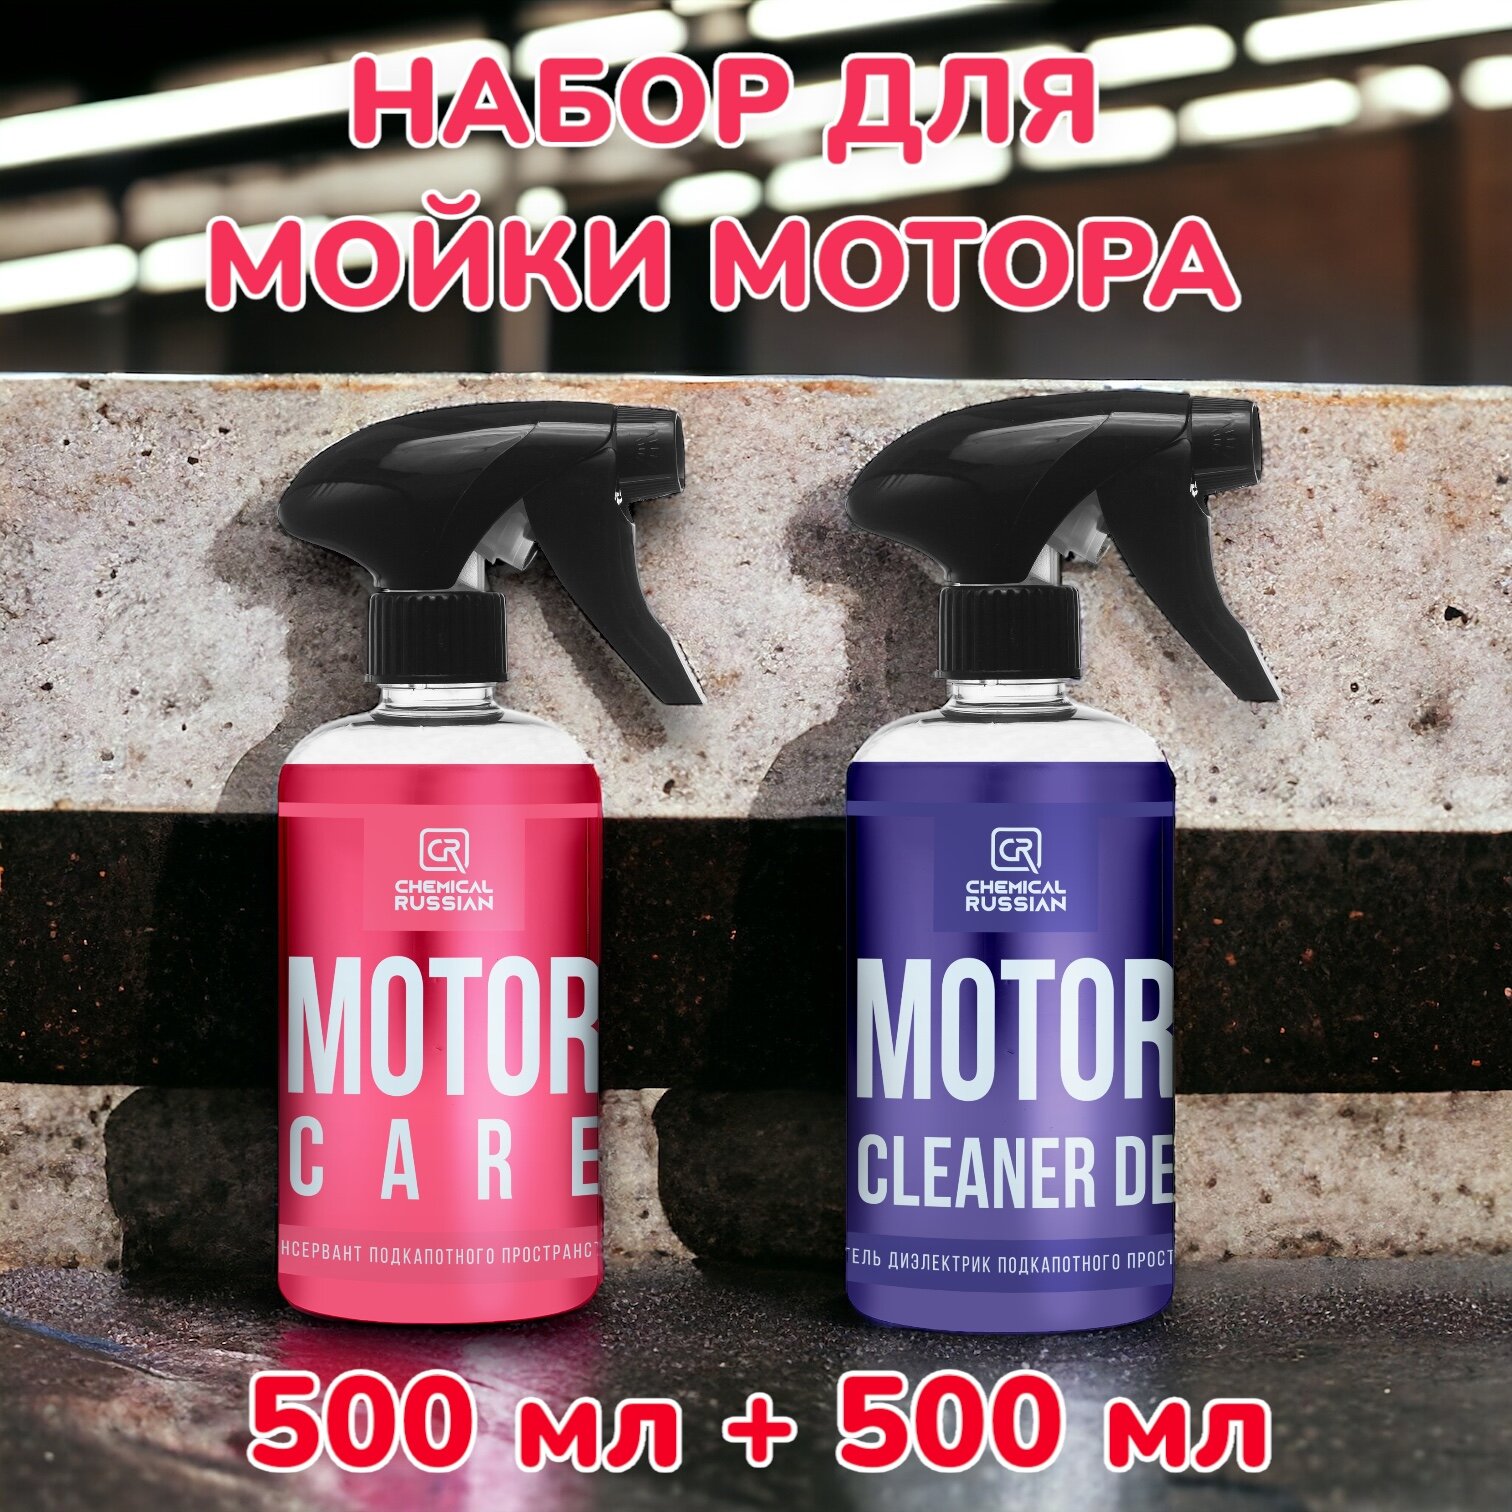 Motor Cleaner DE + Motor Care - комплект для очистки и ухода за подкапотным пространством 500+500 мл Chemical Russian